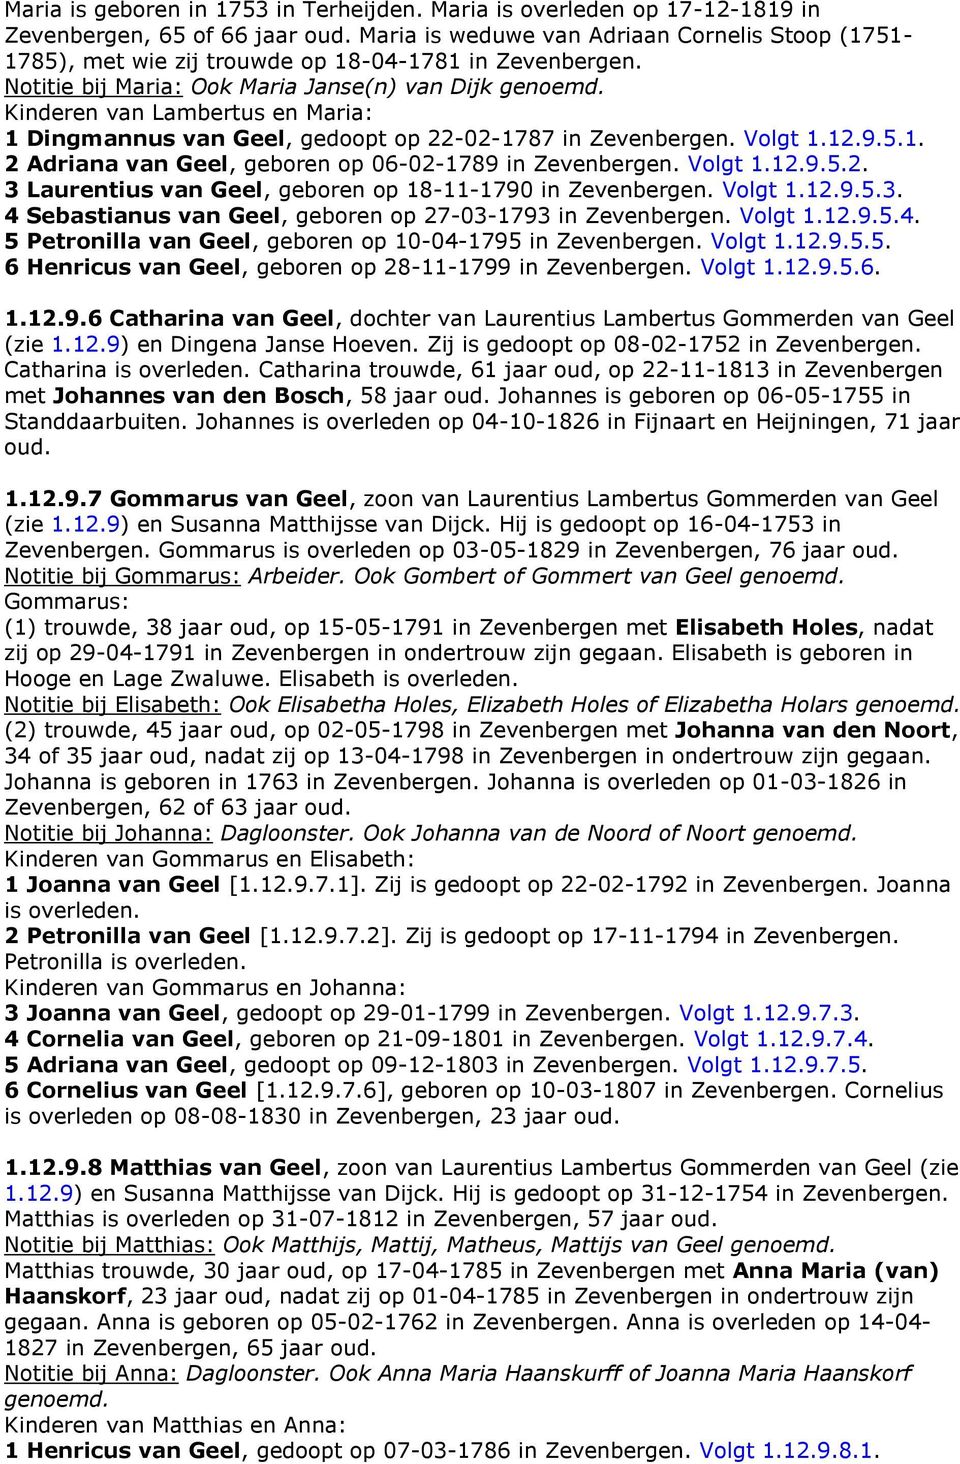 Kinderen van Lambertus en Maria: 1 Dingmannus van Geel, gedoopt op 22-02-1787 in Zevenbergen. Volgt 1.12.9.5.1. 2 Adriana van Geel, geboren op 06-02-1789 in Zevenbergen. Volgt 1.12.9.5.2. 3 Laurentius van Geel, geboren op 18-11-1790 in Zevenbergen.